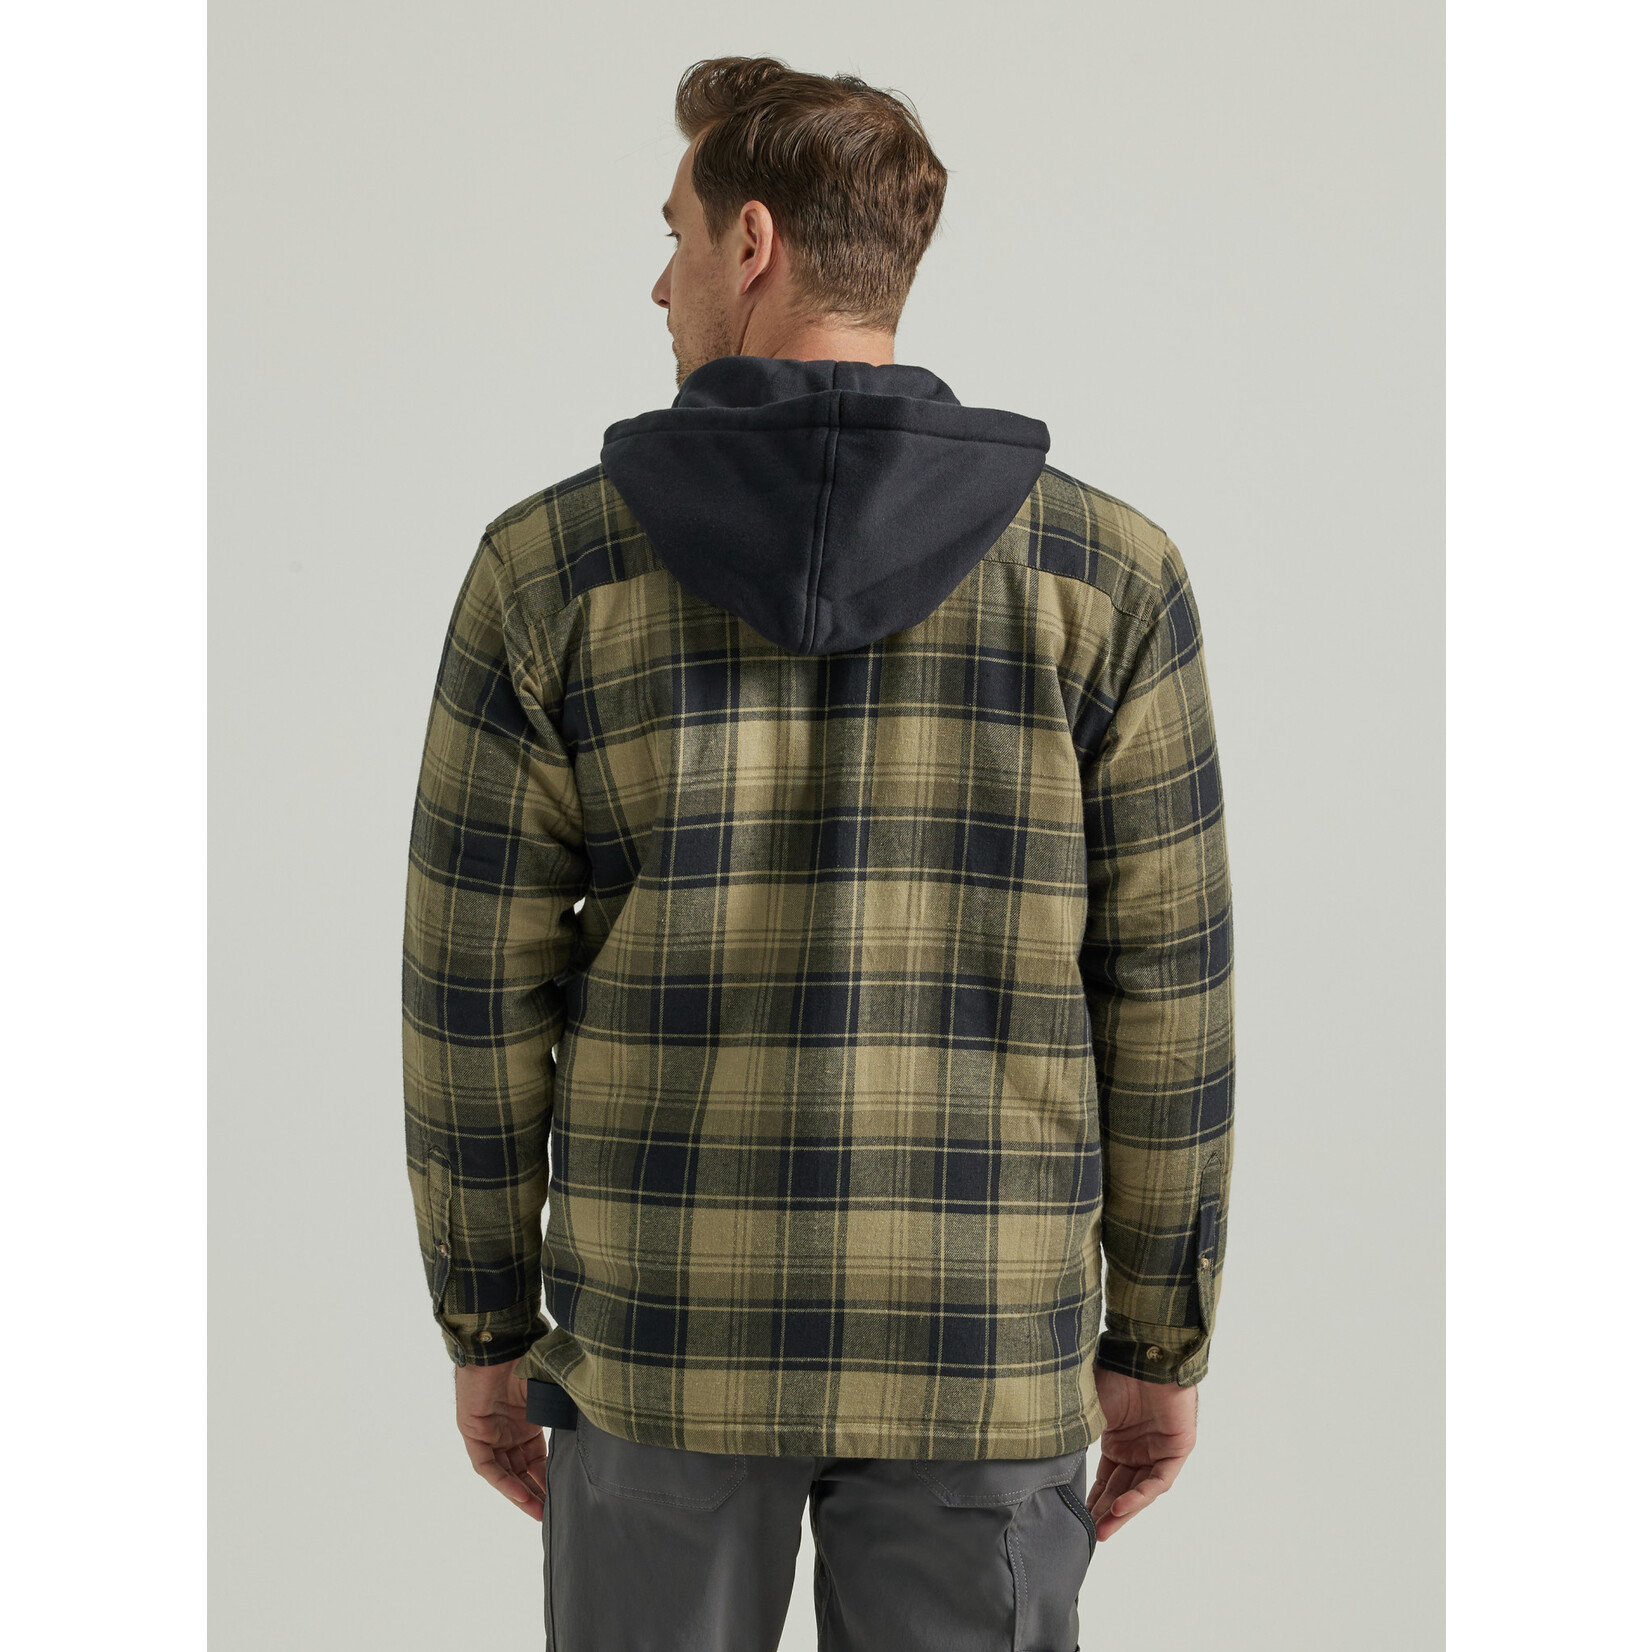 Wrangler Wrangler Men's Riggs Workwear Hooded Flannel - 112330072